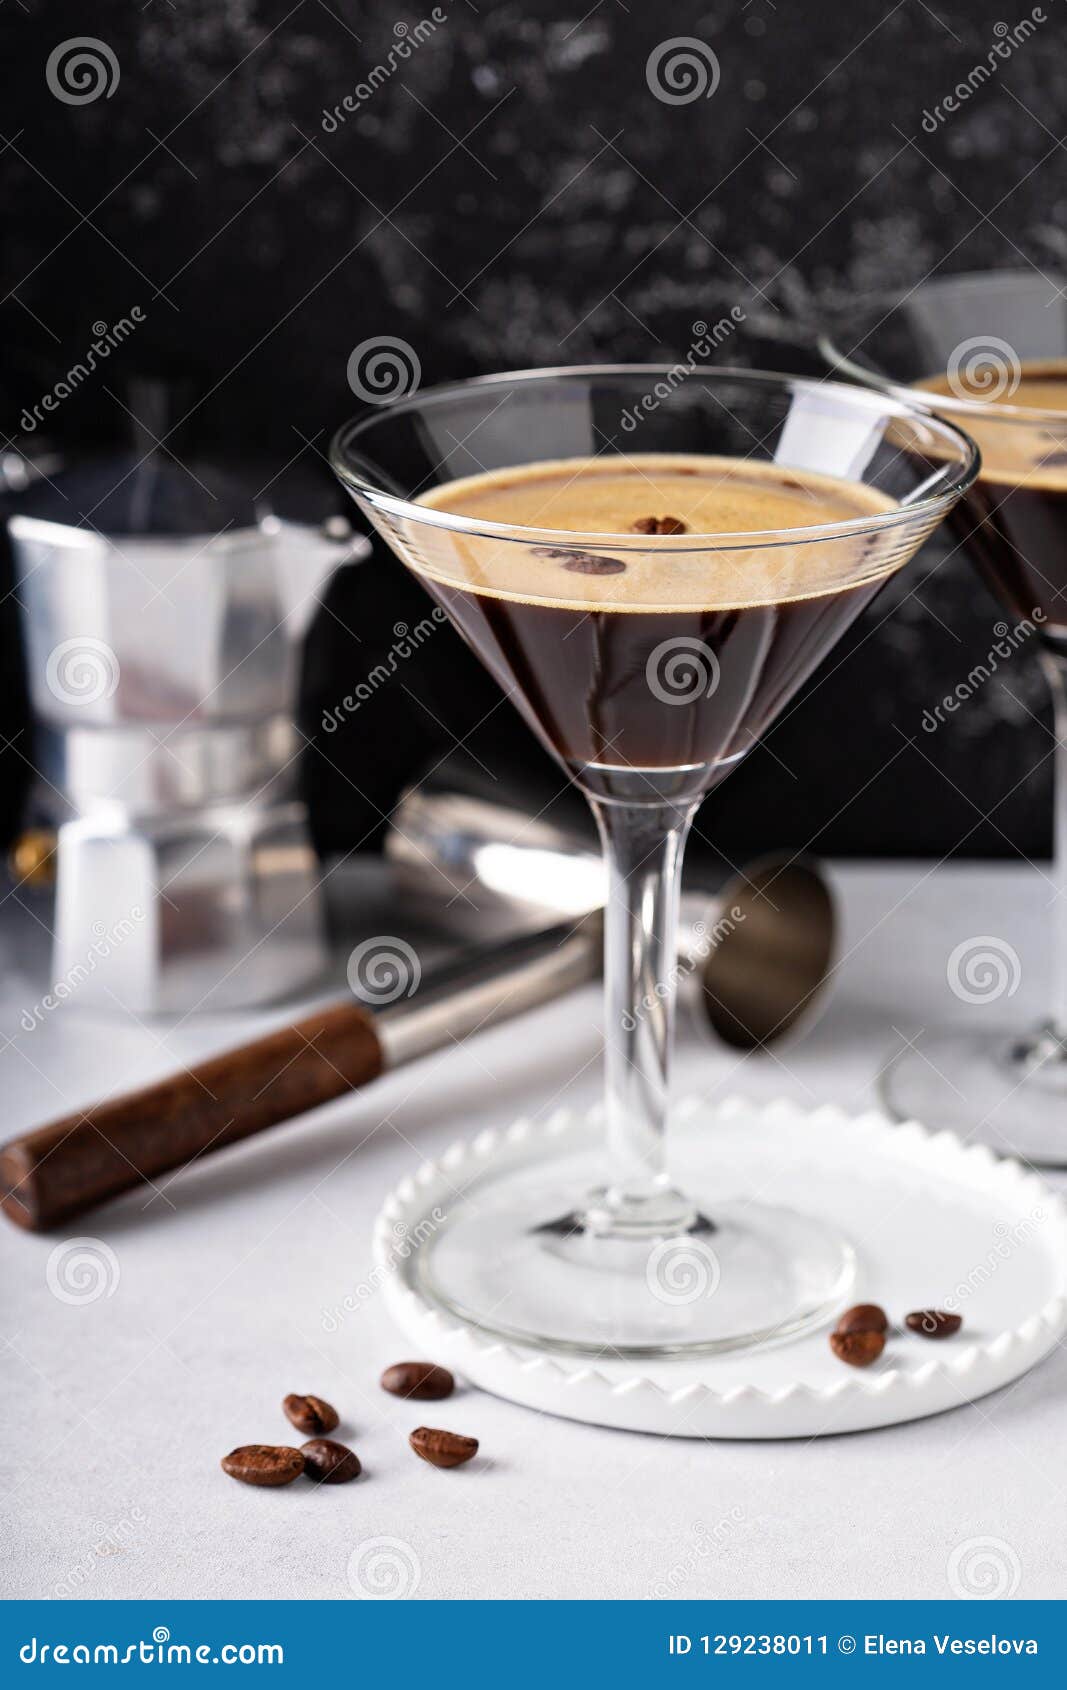 espresso martini in two glasses